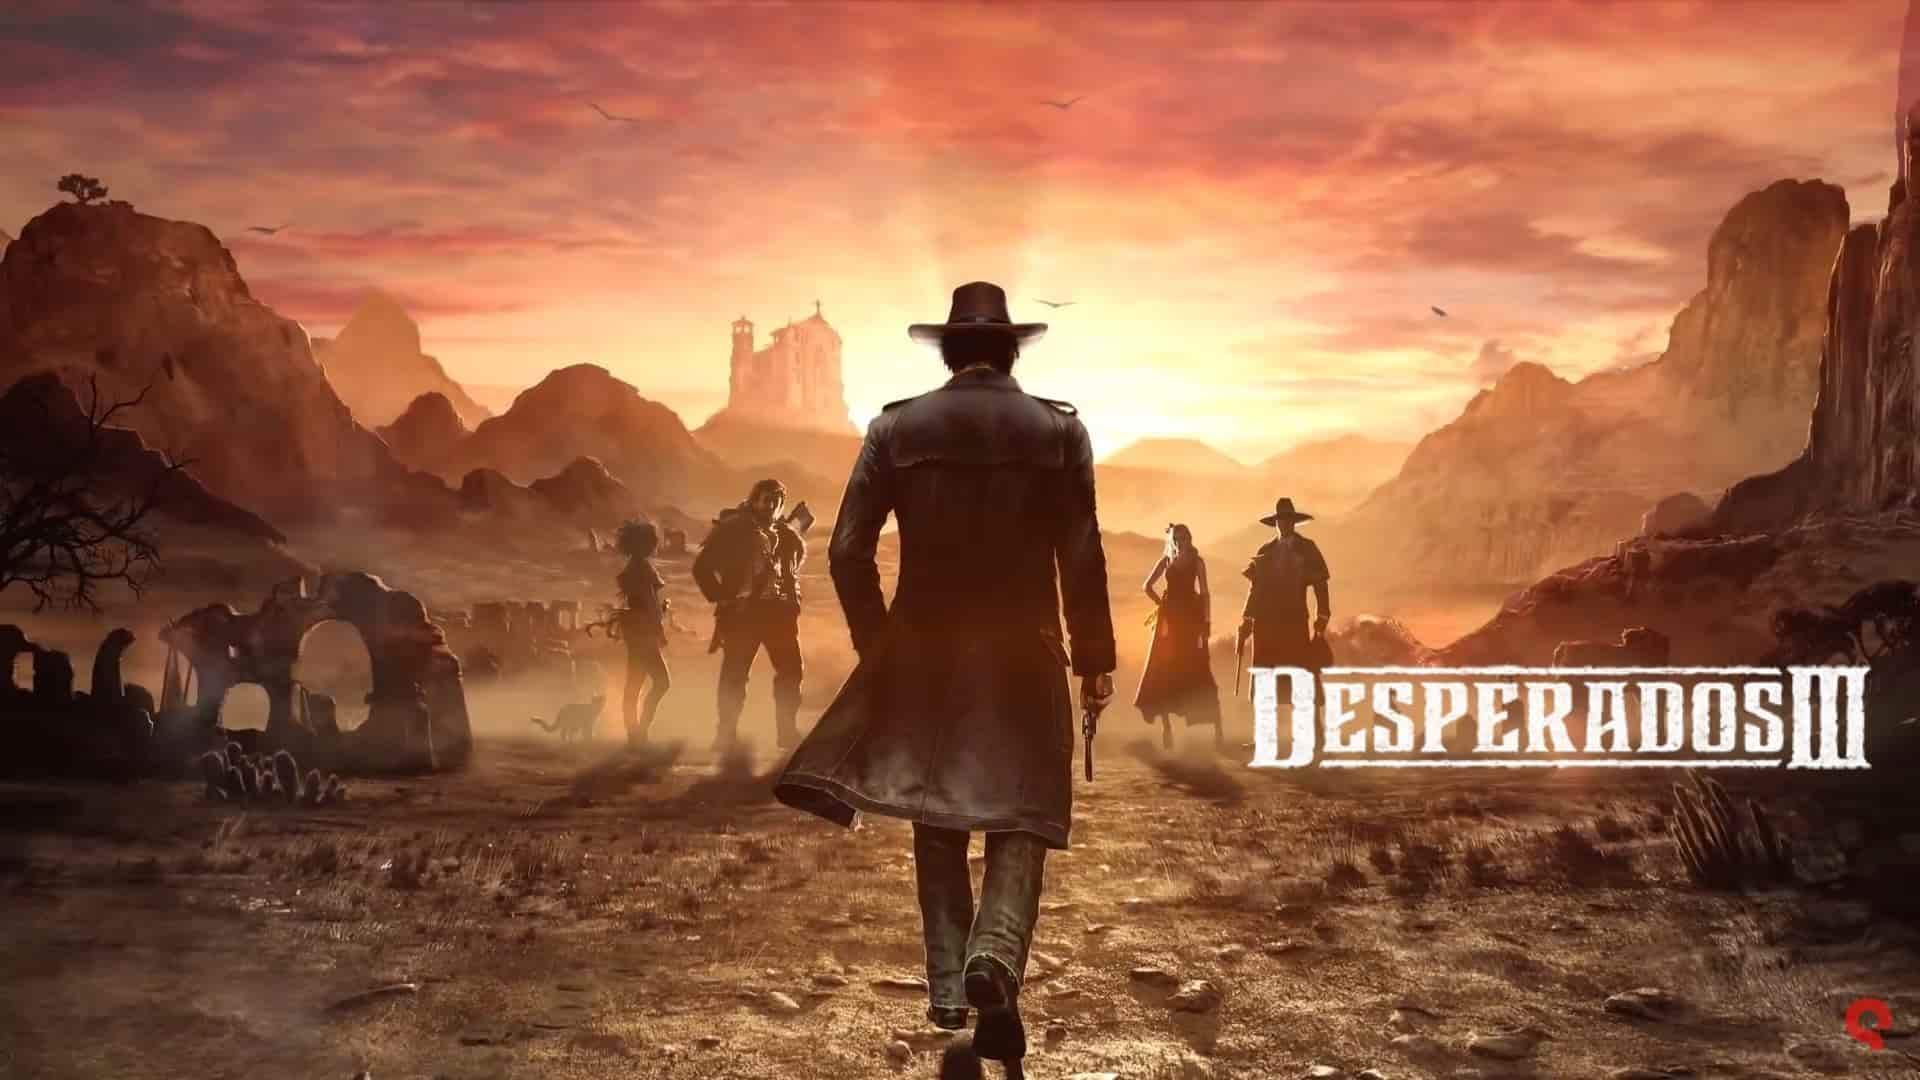 Desperados III, we discover the new trailer with Hector Mendoza